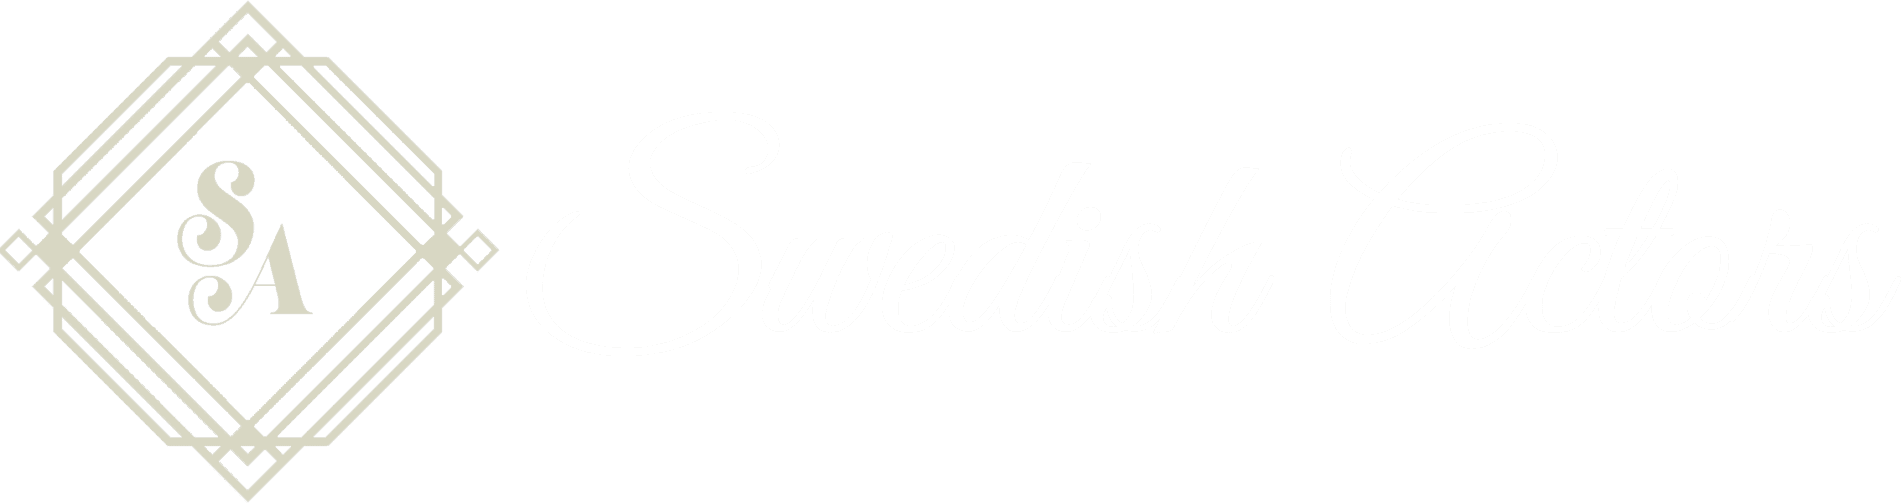 Swedish Actors Logo